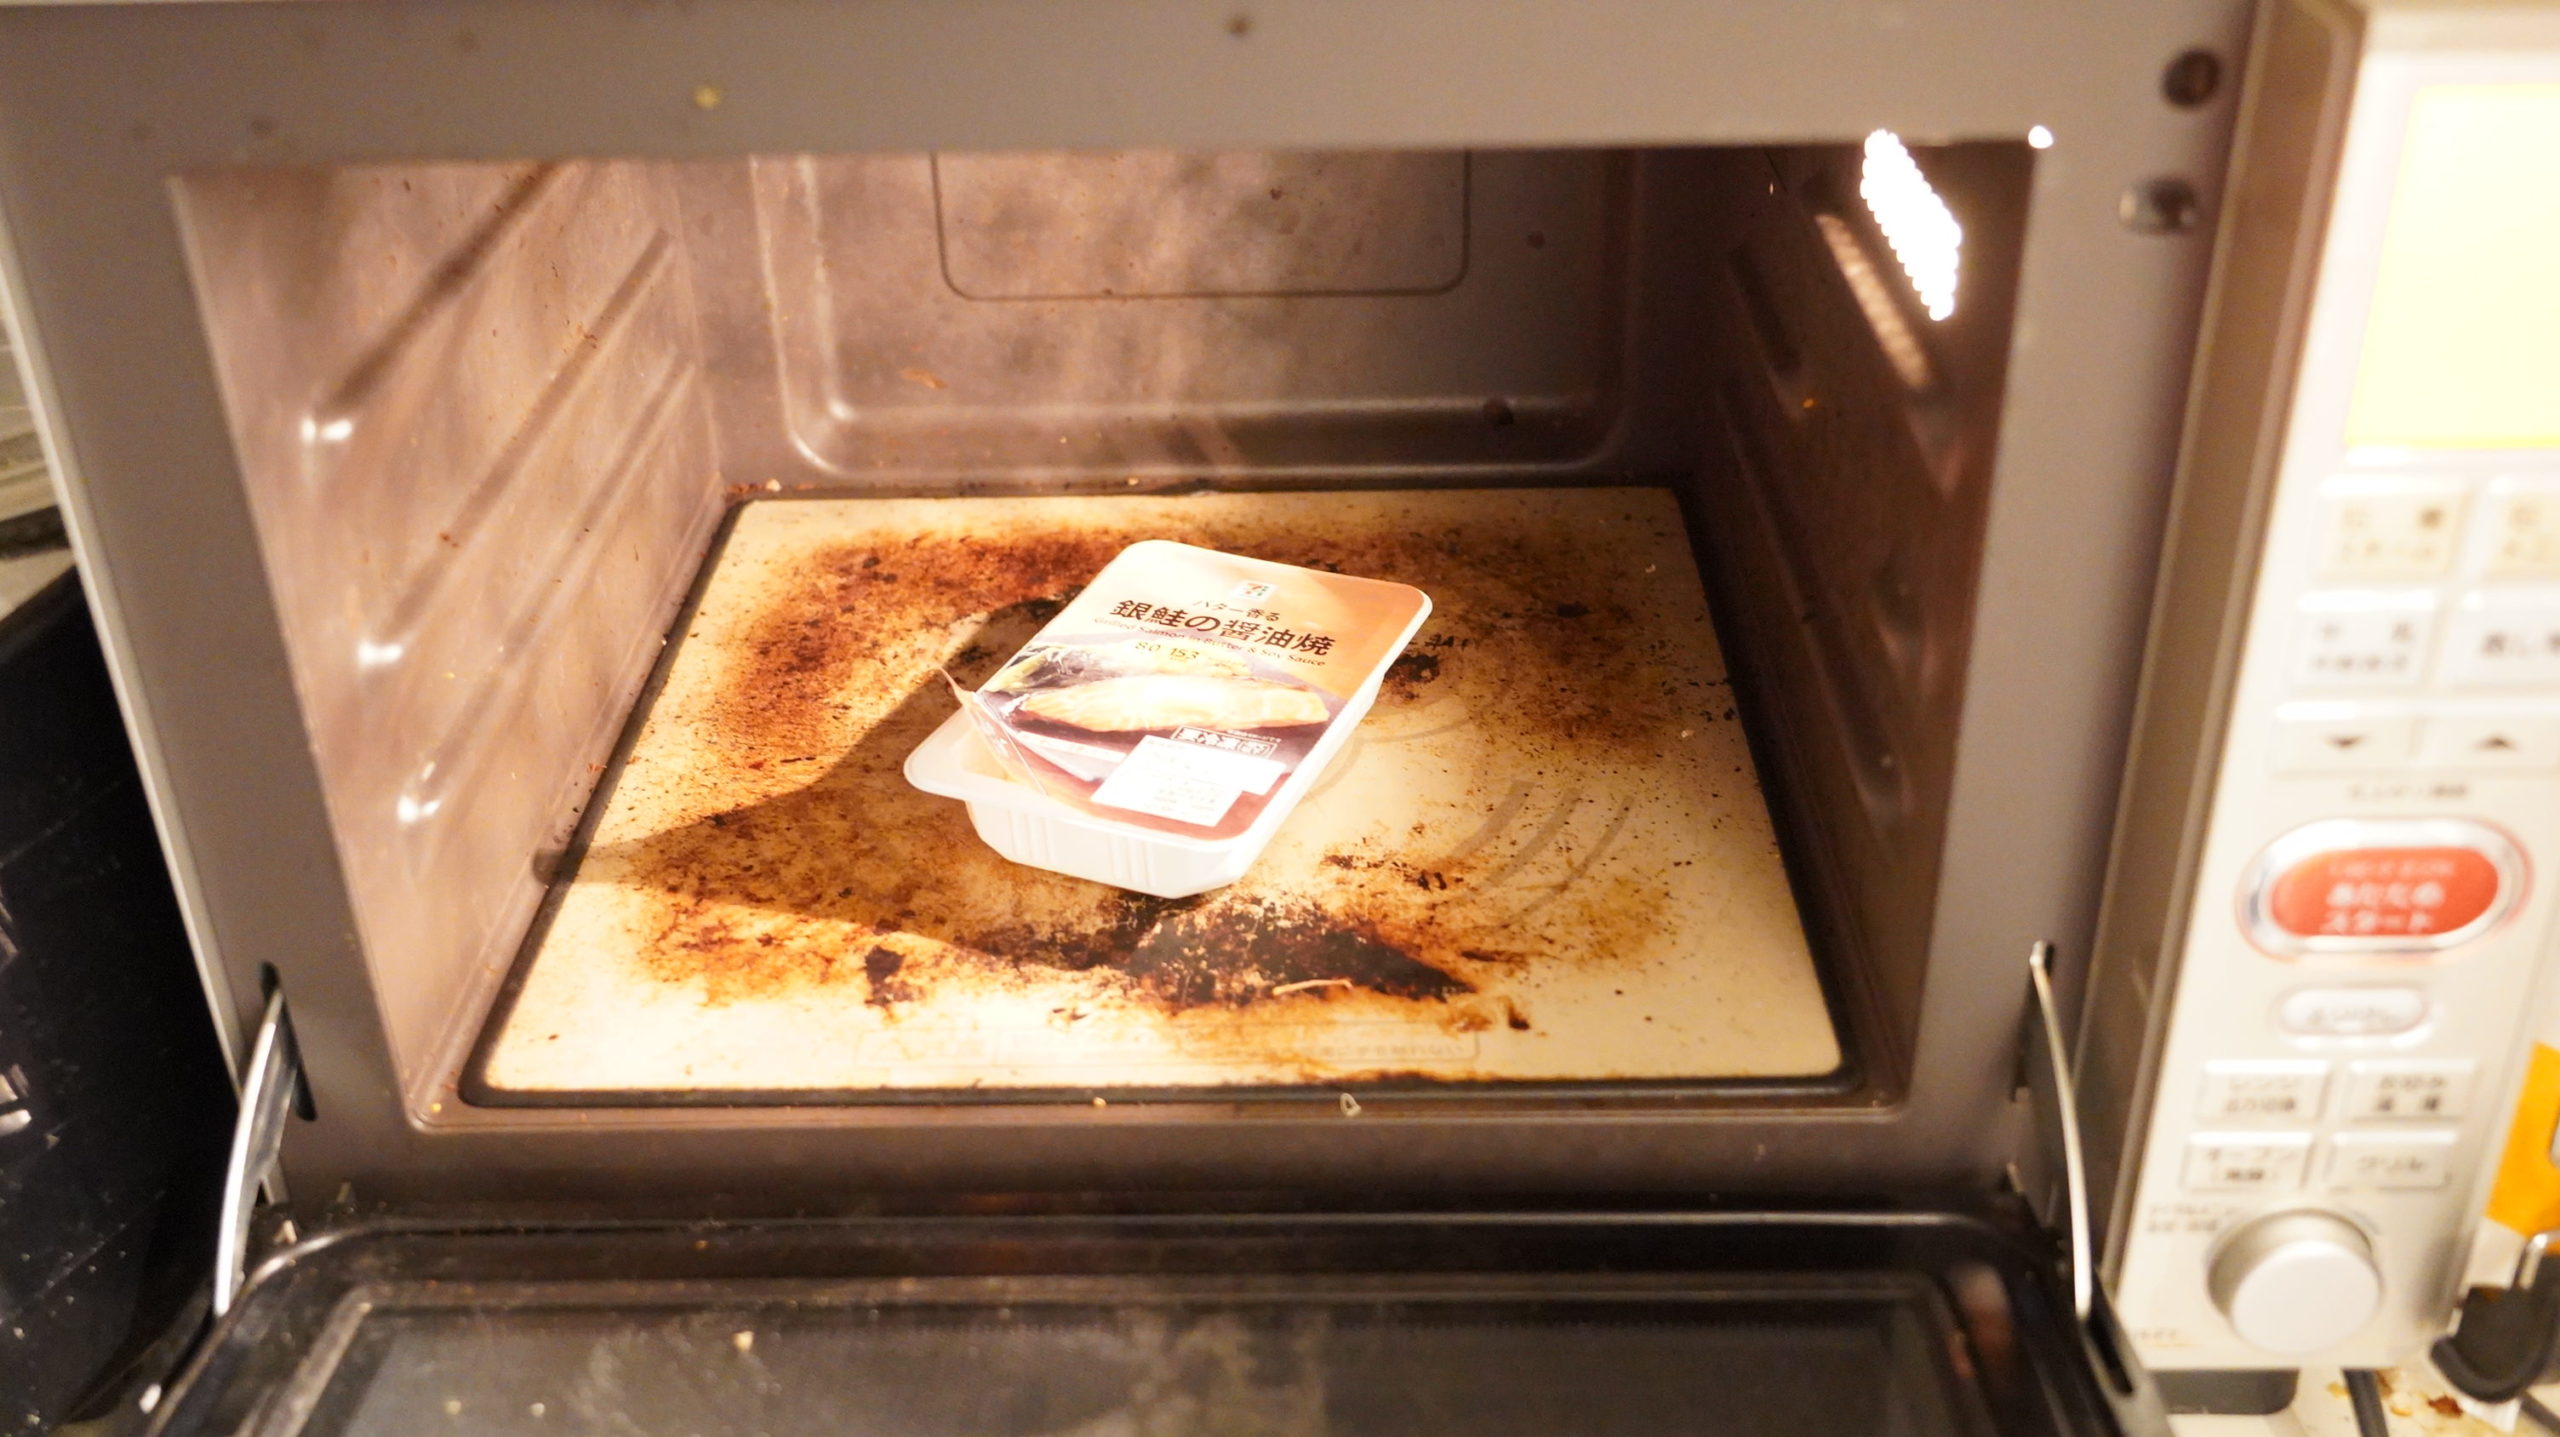 セブンイレブンの冷凍食品「バター香る銀鮭の醤油焼」を電子レンジで加熱している写真